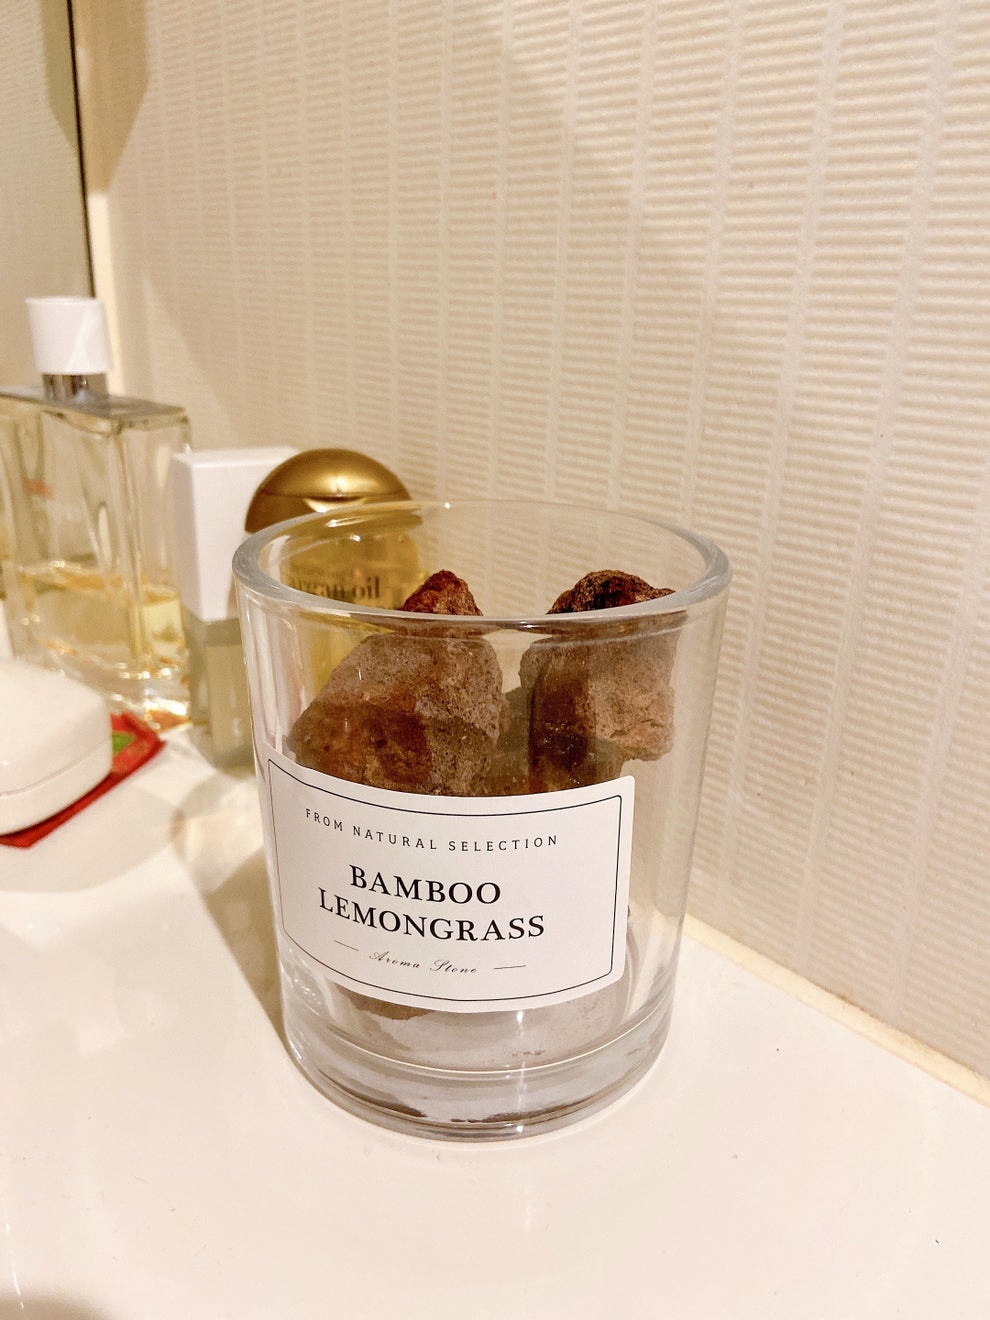 完全にホテルの香りだわ…。ニトリで買った“1518円アロマ” 高級感がハンパない